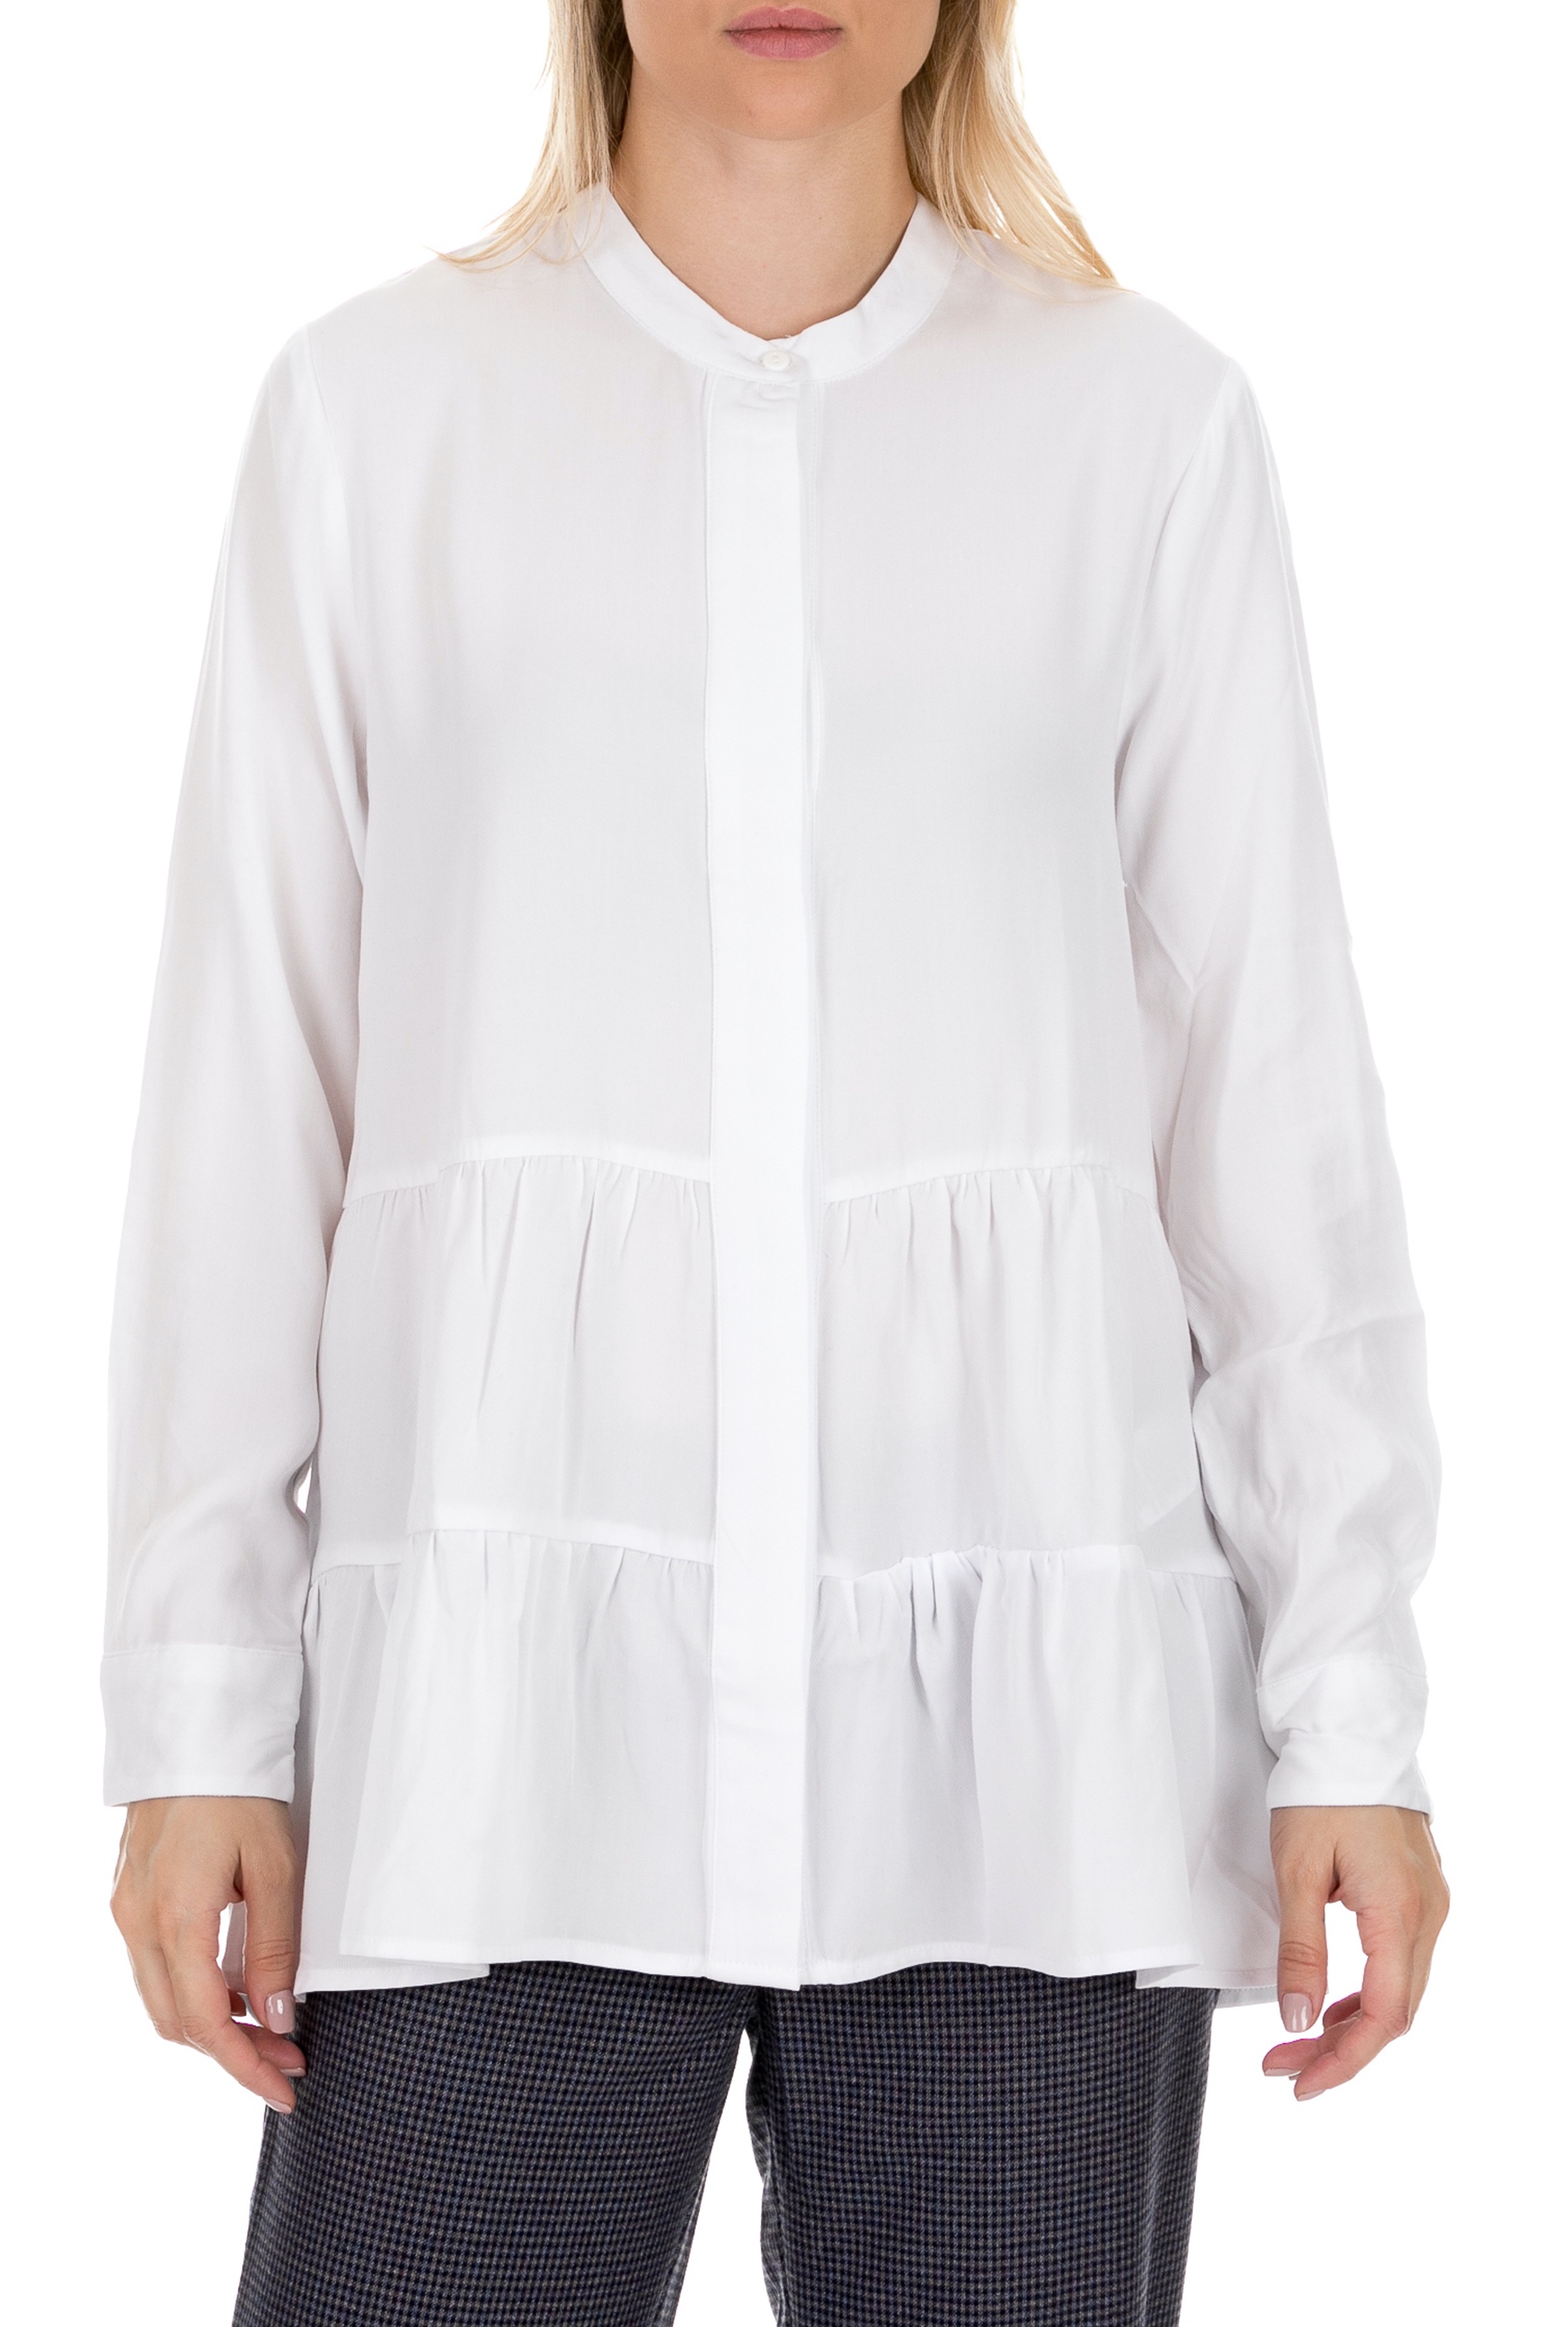 Γυναικεία/Ρούχα/Πουκάμισα/Μακρυμάνικα COTTON CANDY - Γυναικεία πουκαμίσα COTTON CANDY PREMIUM SELECTION λευκή